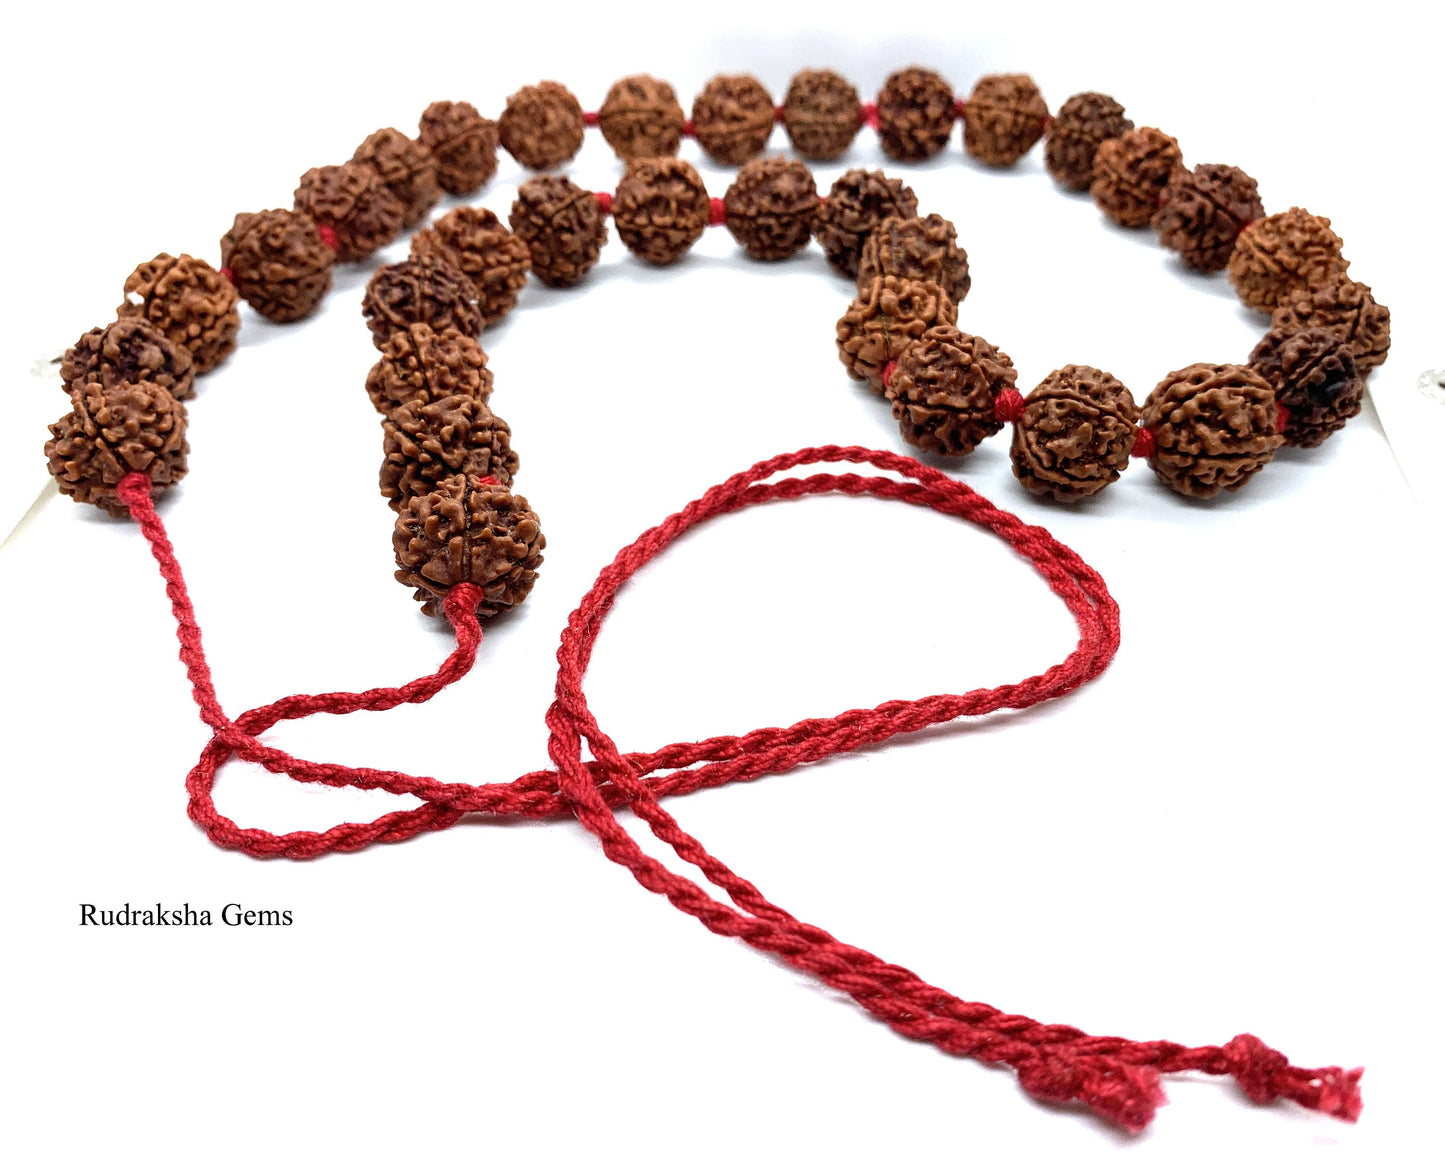 5 Facet Five Mukhi Rudraksha Necklace - 33 Collector Nepalese beads knotted adjustable open ends - Rudraksha Mala OM Meditation Shiva Rosary